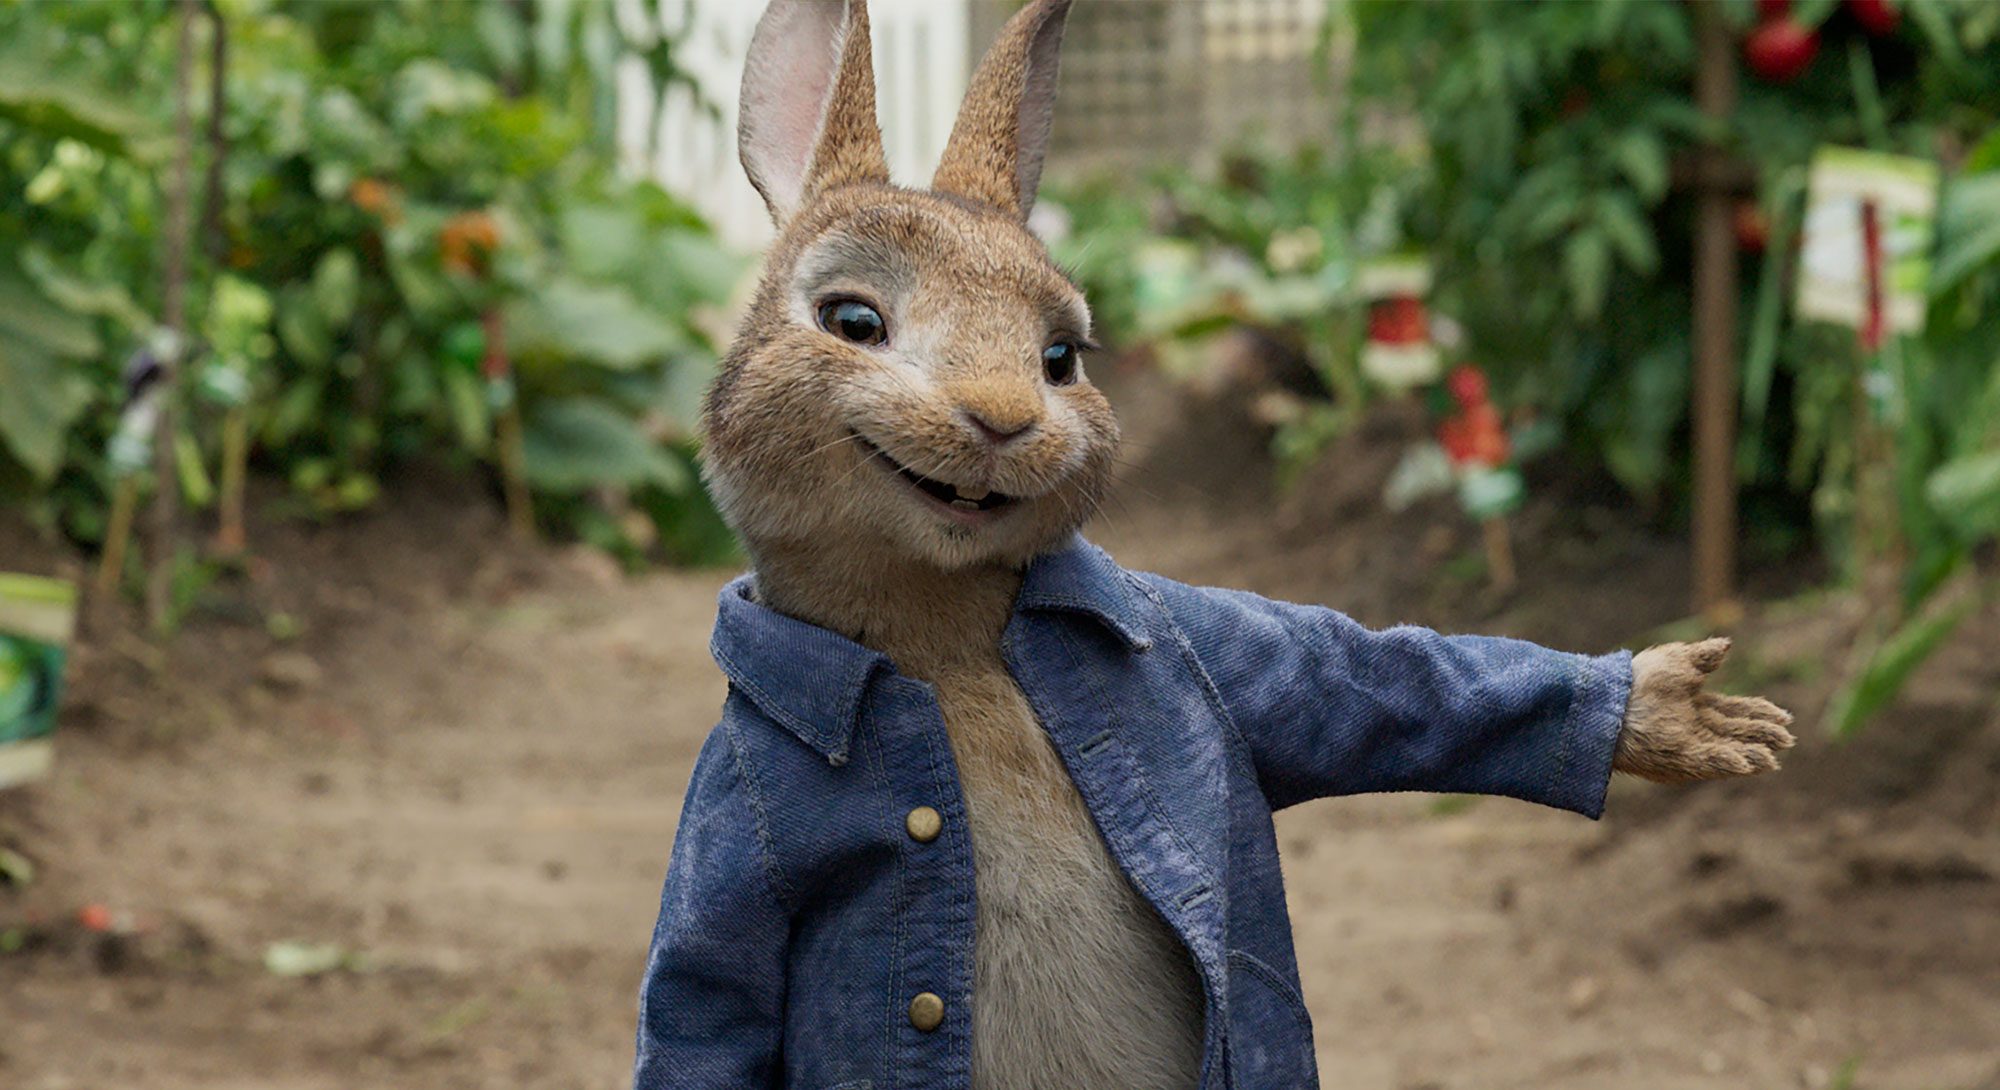 Peter Rabbit 3 Release Date, Plot, Cast Details